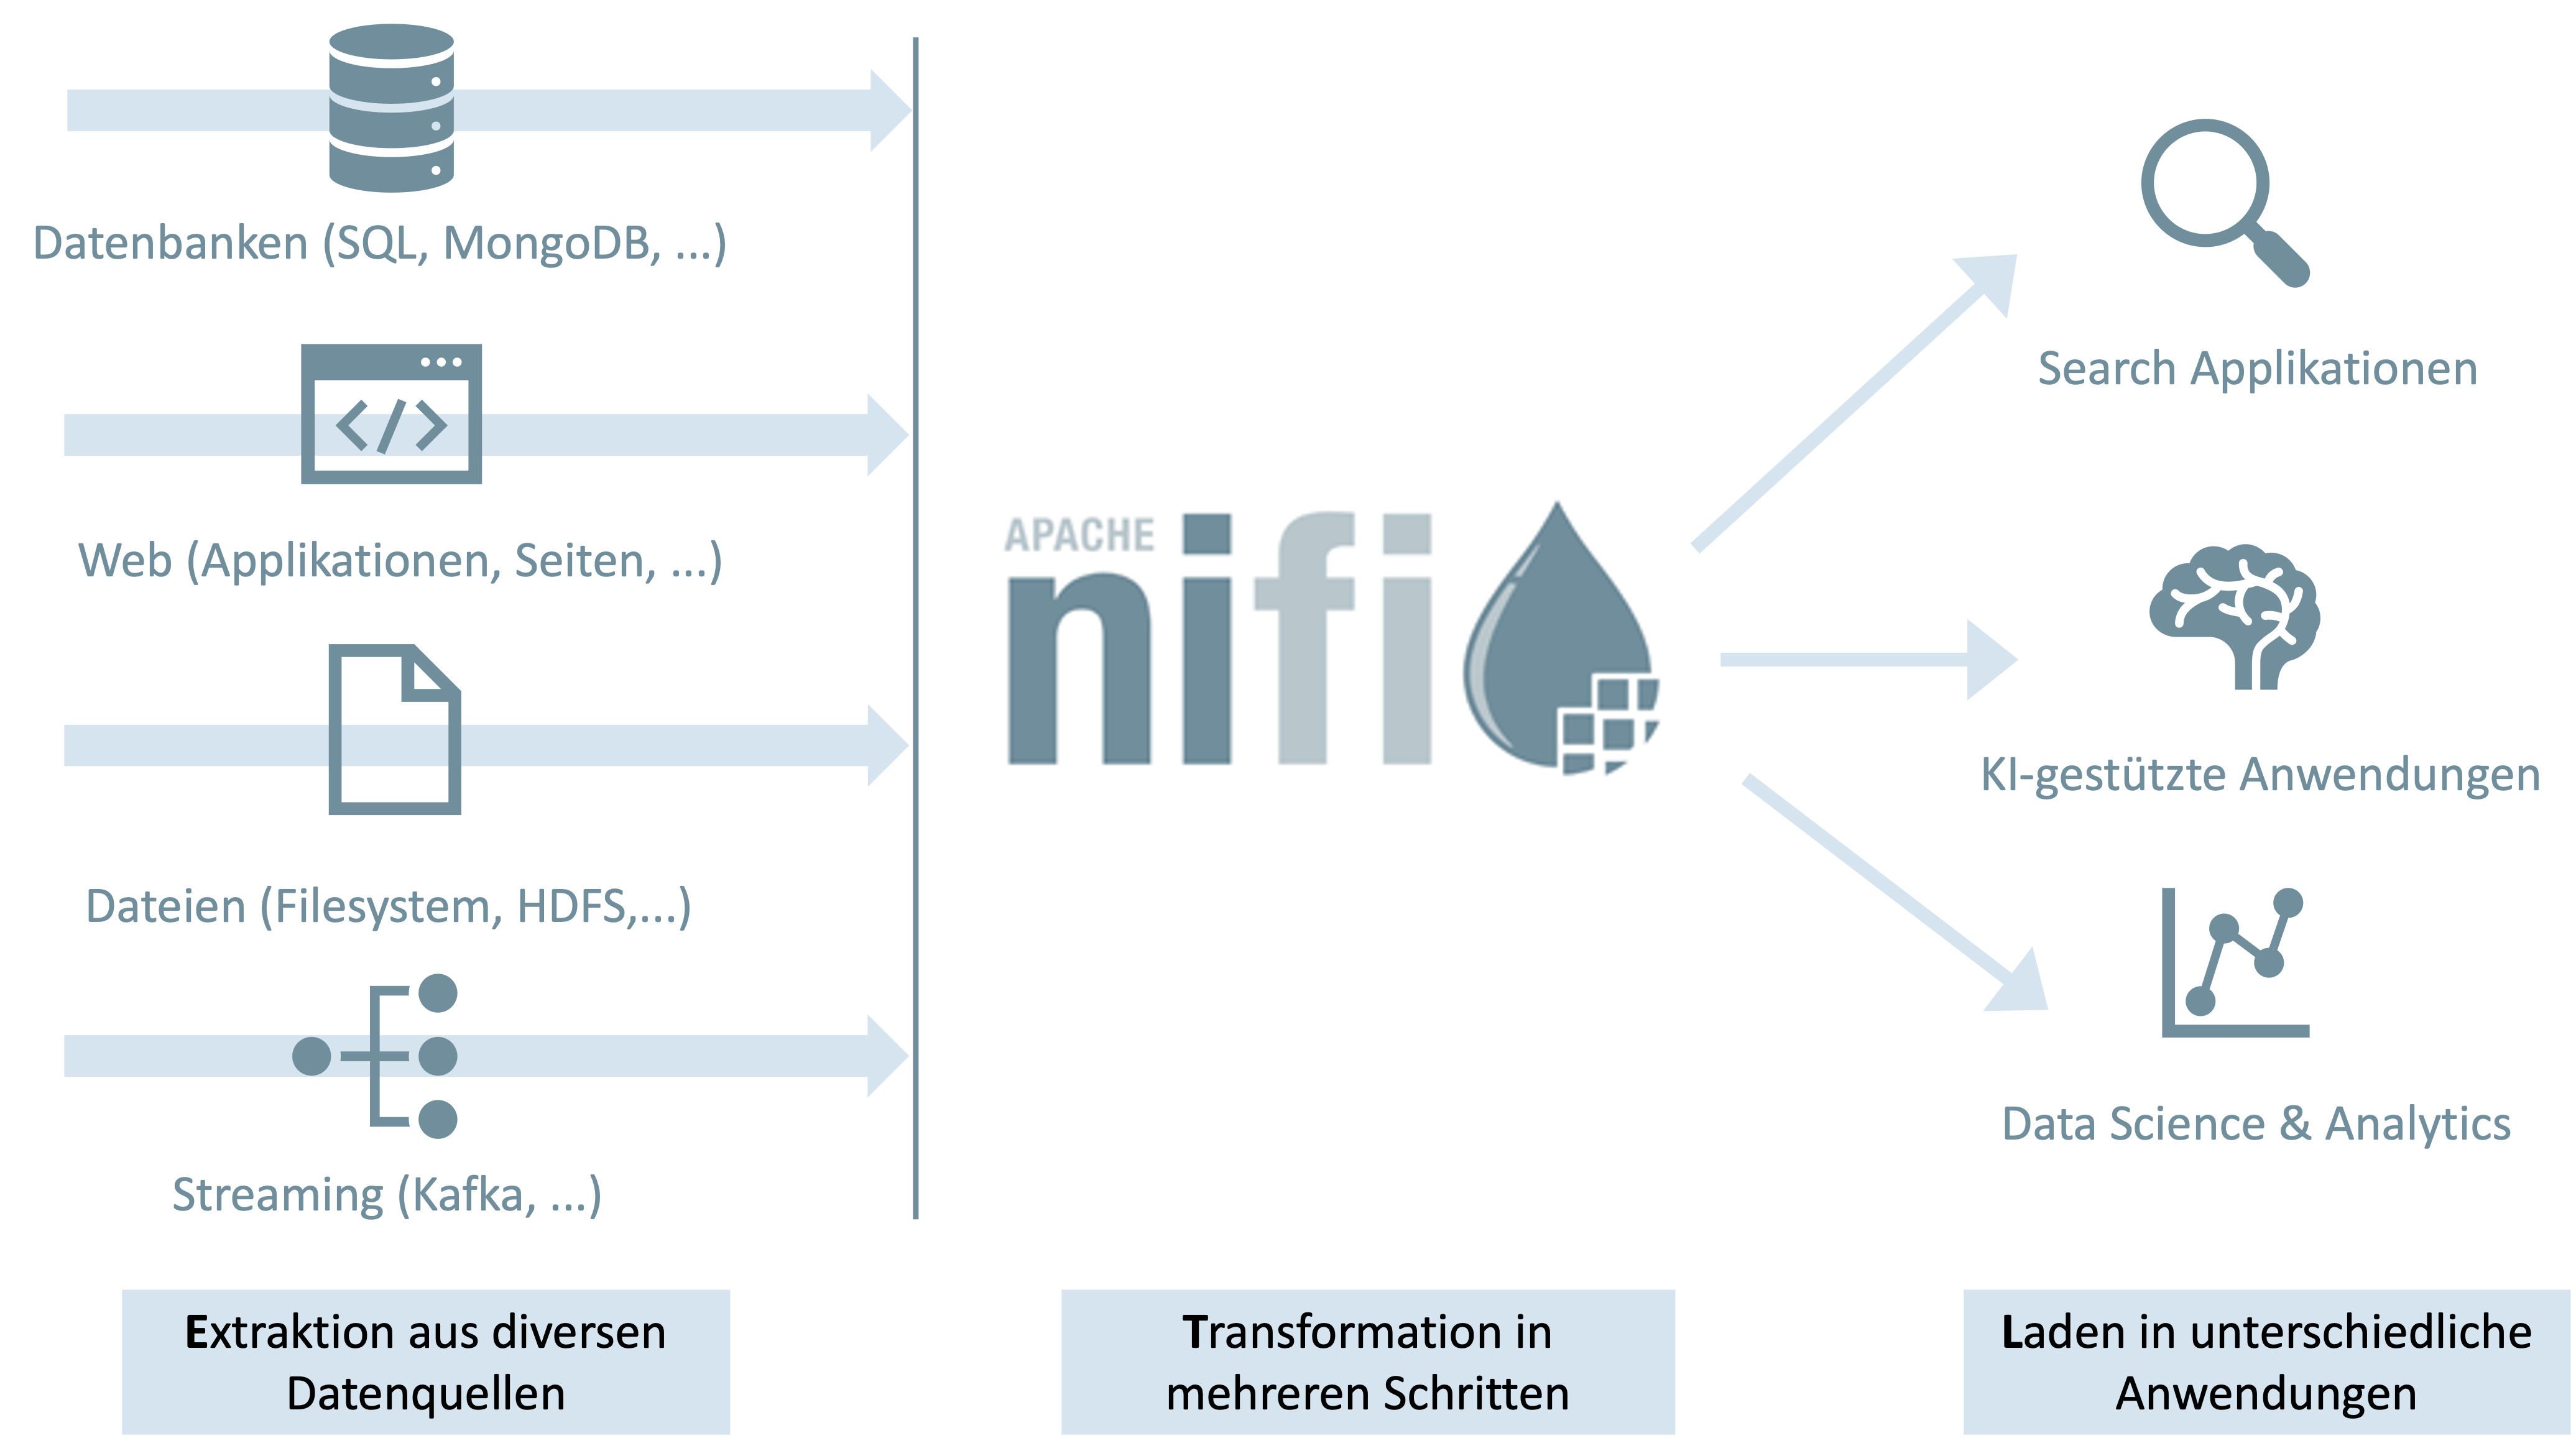 Apache NiFi extrahiert aus diversen Datenquellen, transformiert diese in mehreren Schritten und lädt sie dann in unterschiedliche Anwendungen.